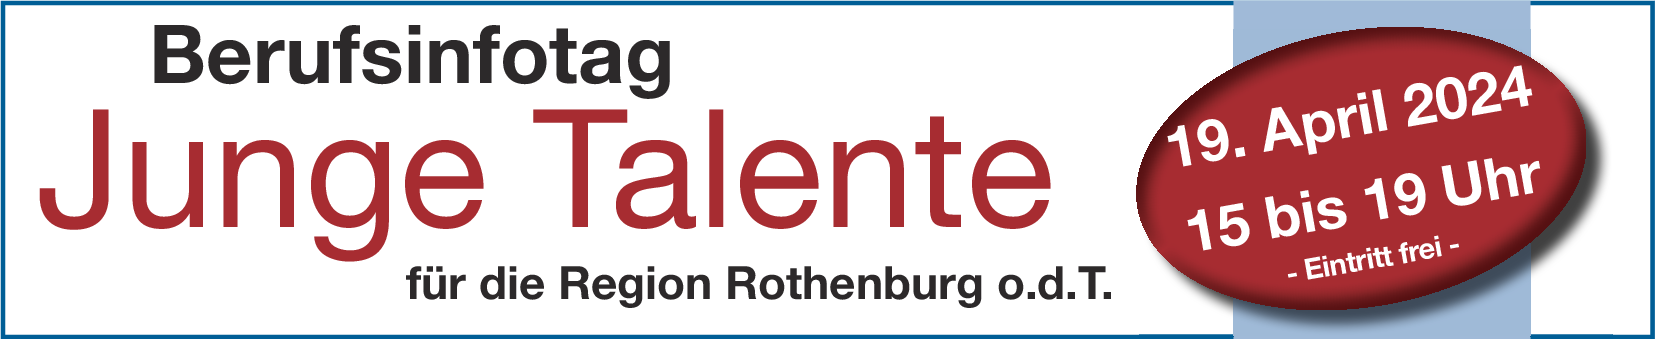 Berufsinfotag "Talente Junge" in der Region Rothenburg 